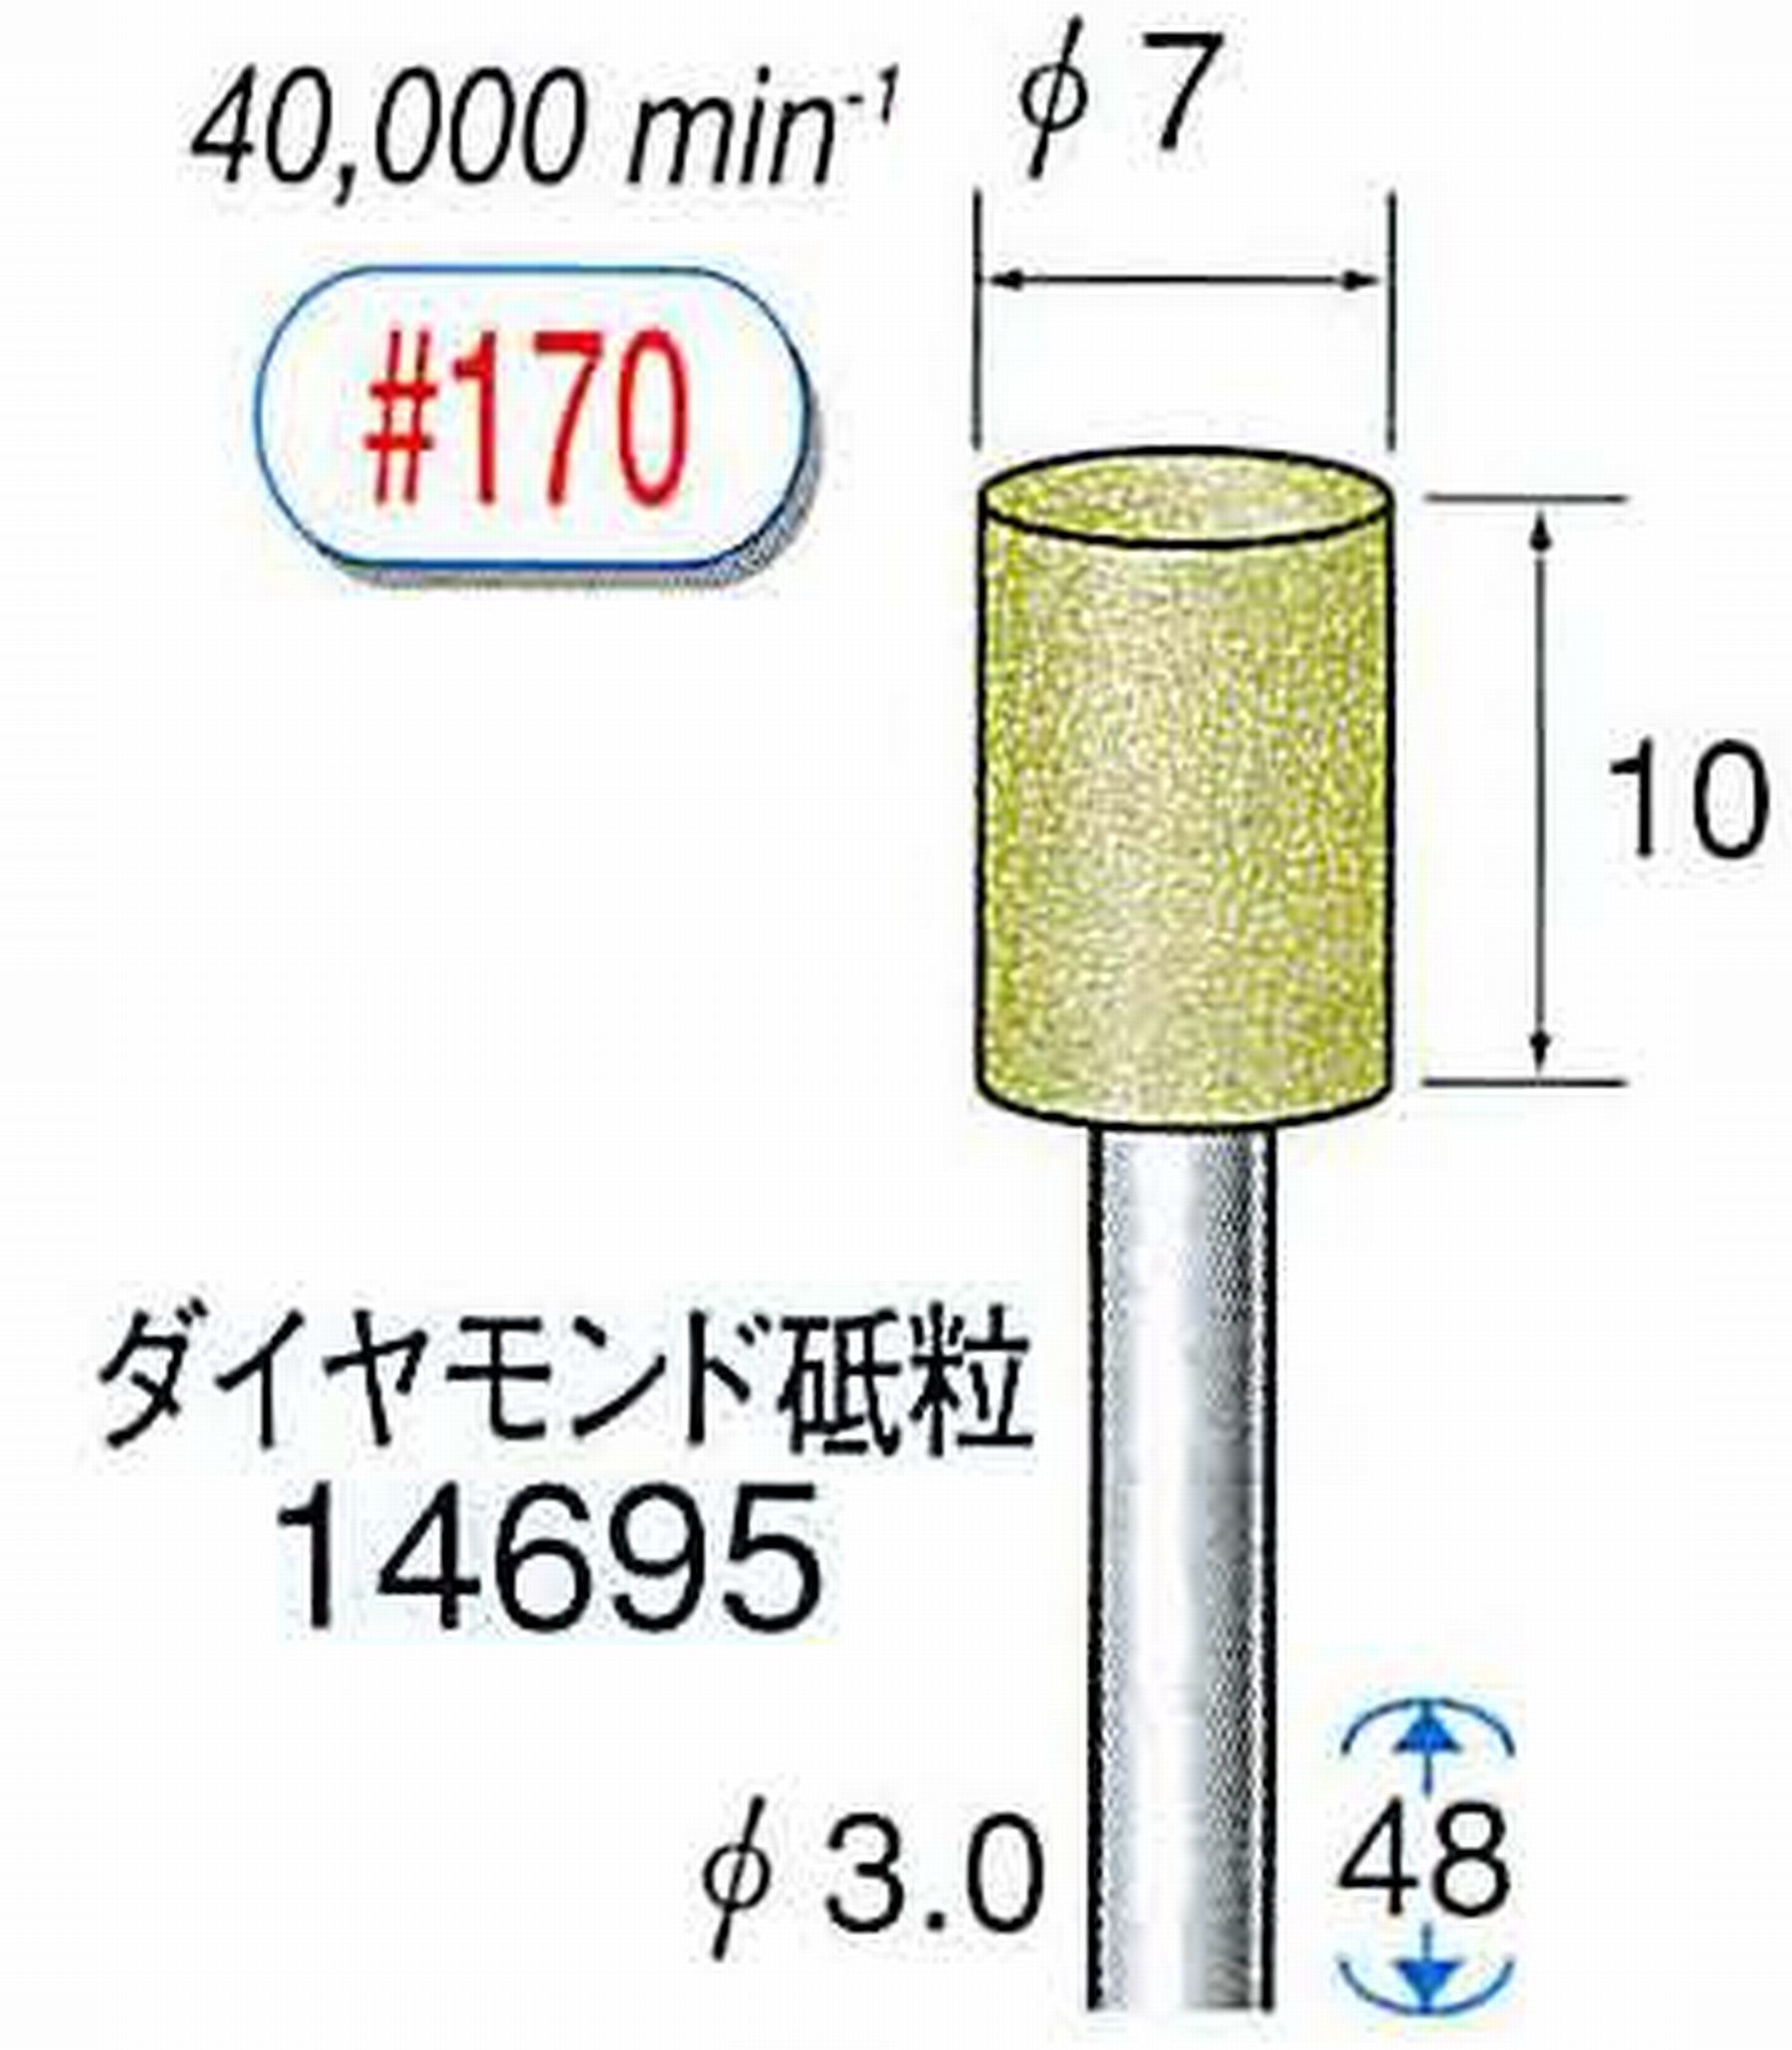 ナカニシ/NAKANISHI セラミックダイヤモンド砥石 ダイヤモンド砥粒 軸径(シャンク)φ3.0mm 14695